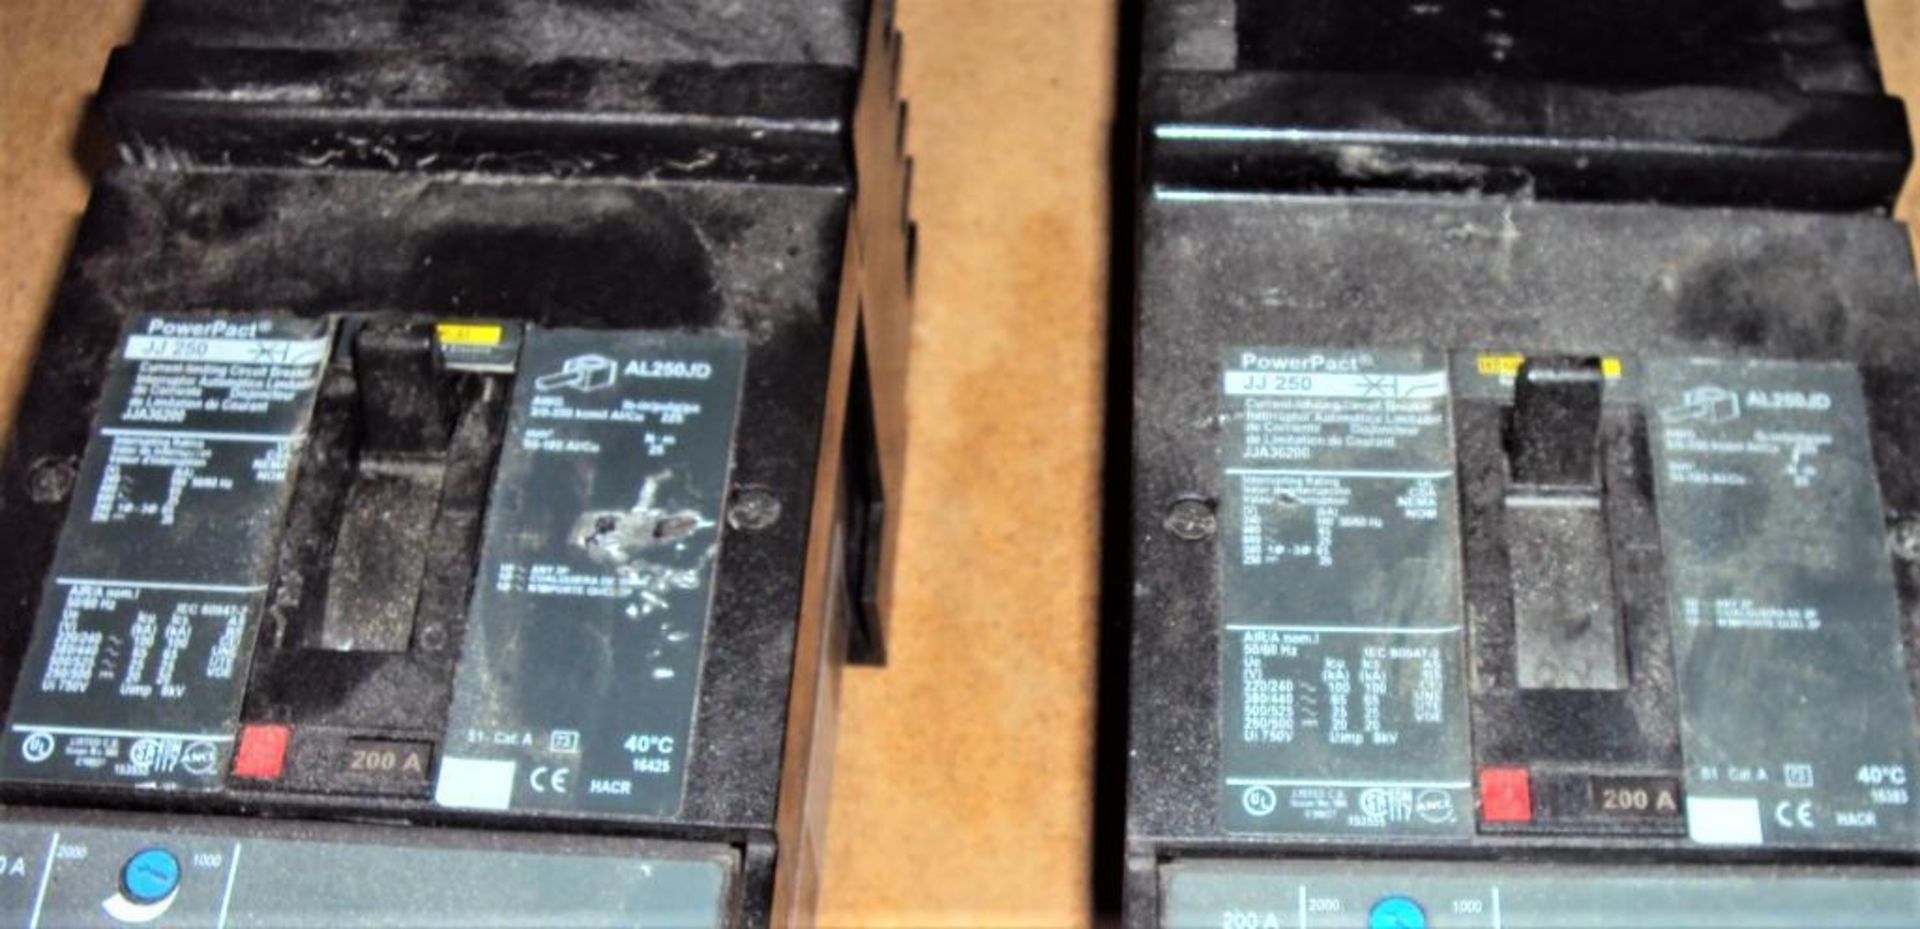 (2) Square D JJ250 & (1) LG400 PowerPact Circuit Breakers - Image 2 of 4